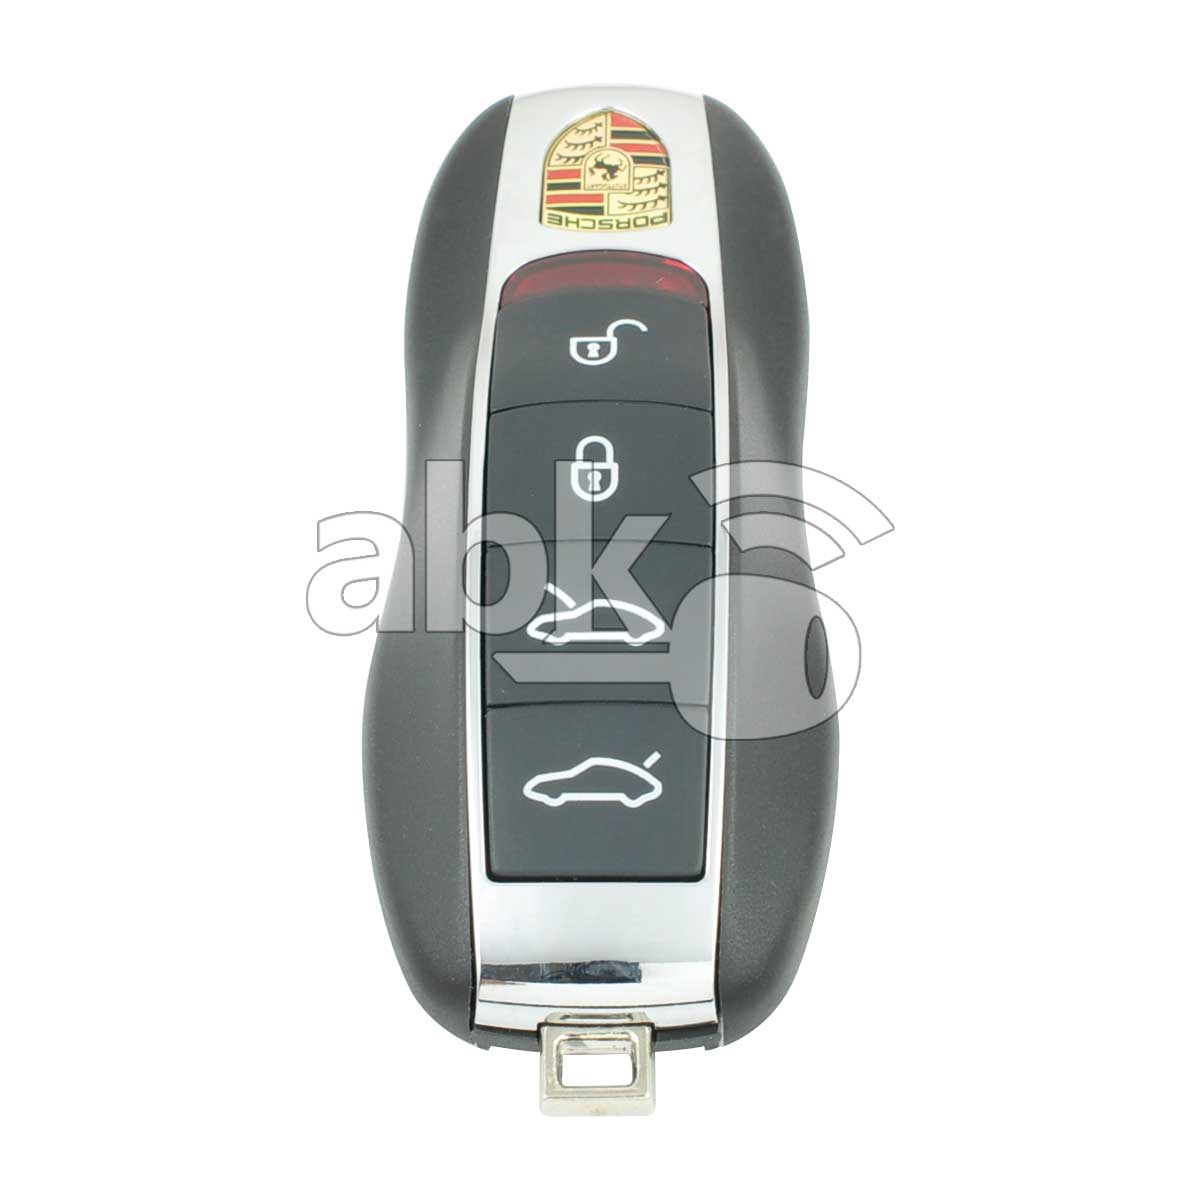 Porsche Panamera Macan 2013+ Smart Key 4Buttons 433MHz - ABK-3905 - ABKEYS.COM